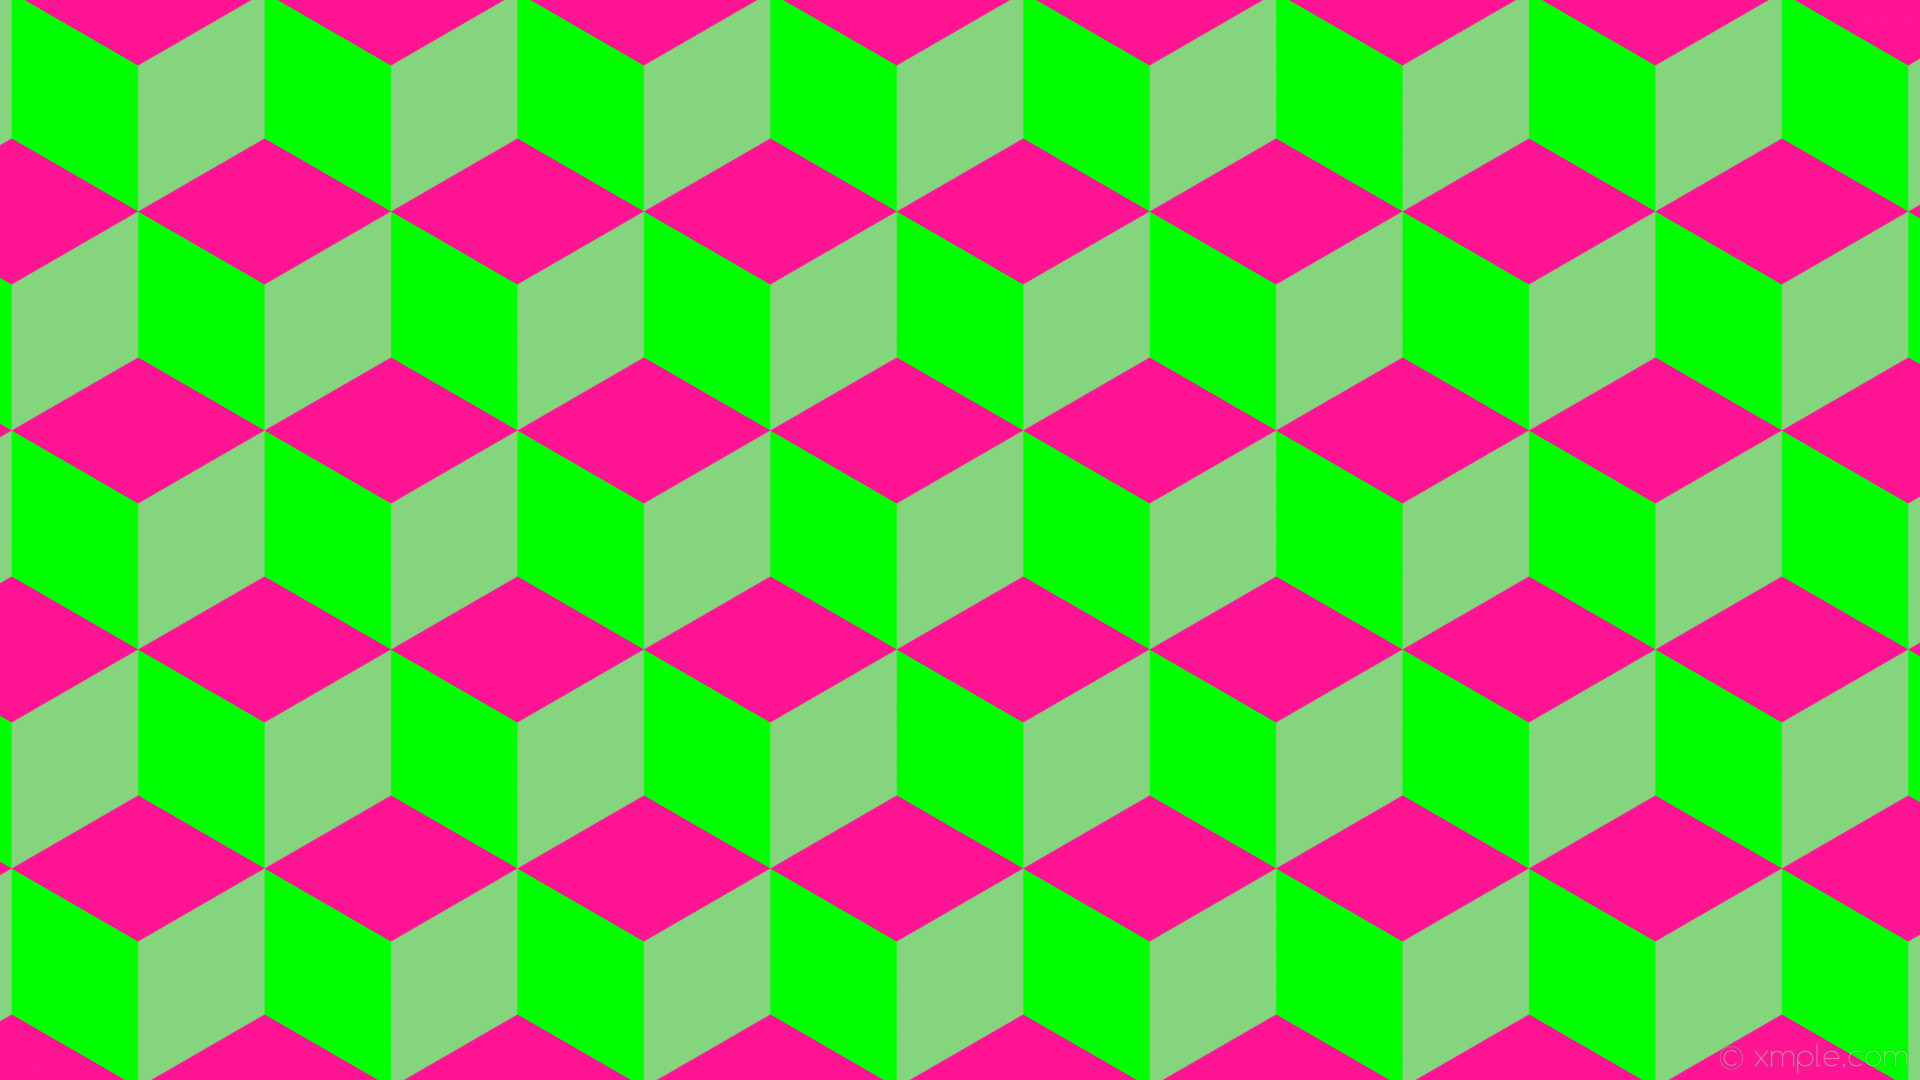 1920x1080 wallpaper 3d cubes pink green deep pink lime #85d57f #ff1493 #00ff00 60Â°